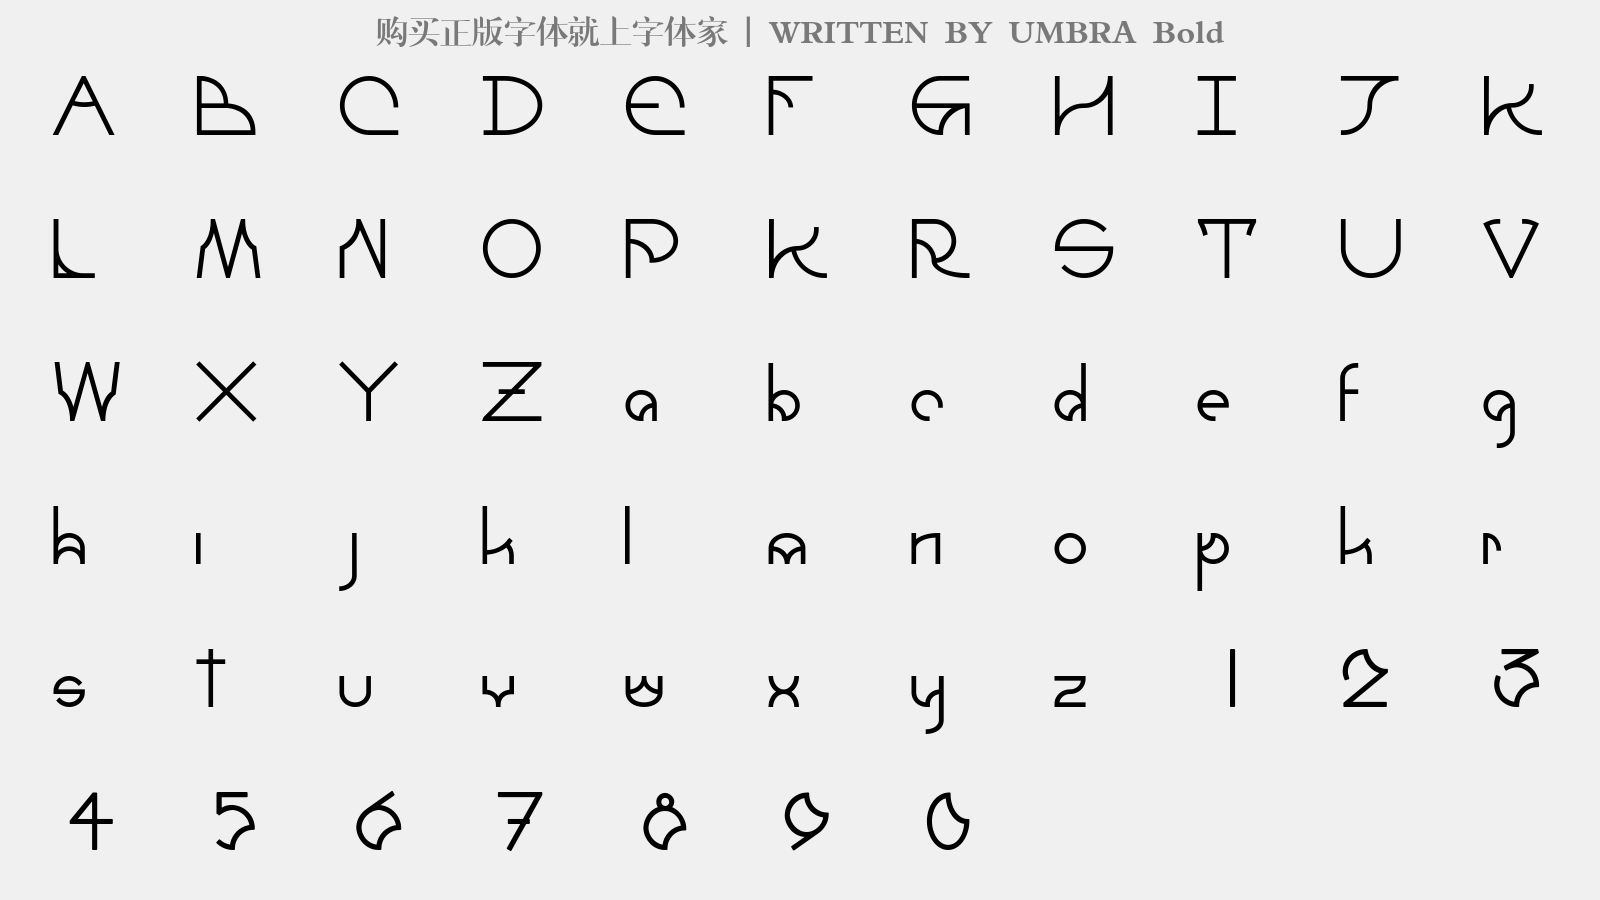 UMBRA Bold - 大写字母/小写字母/数字